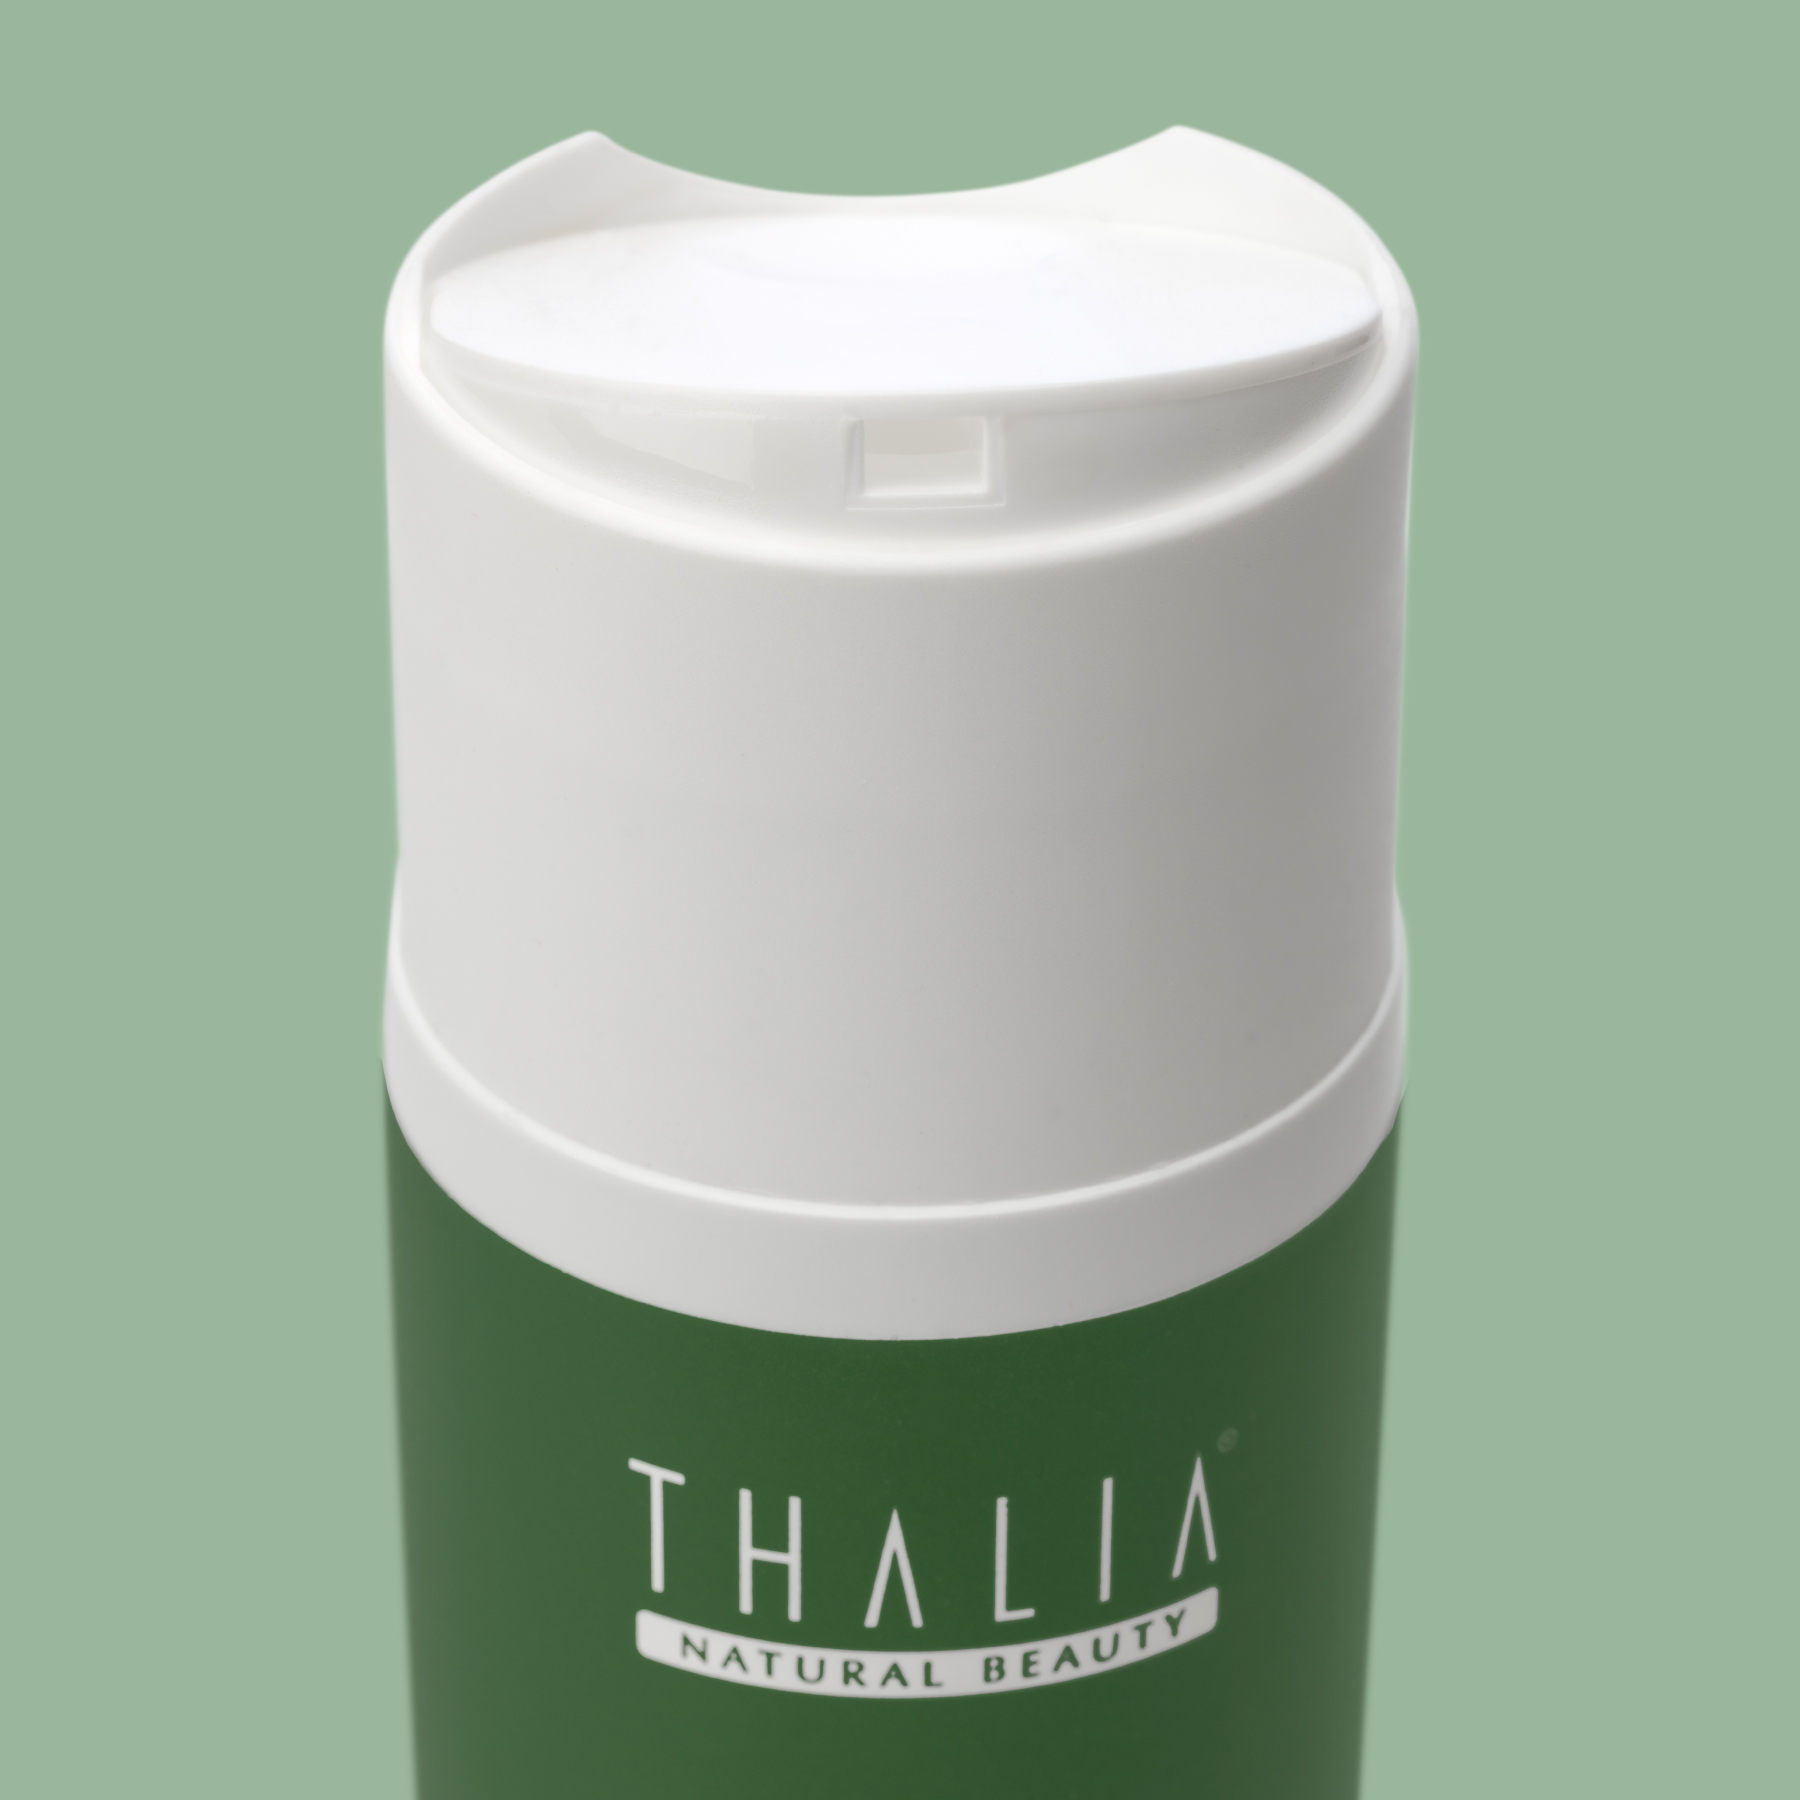 Thalia Akne Gidermeye & Gözenek Sıkılaştırmaya Yardımcı Yüz Temizleme Toniği 200ml Mercan Köşk (Marjoram)